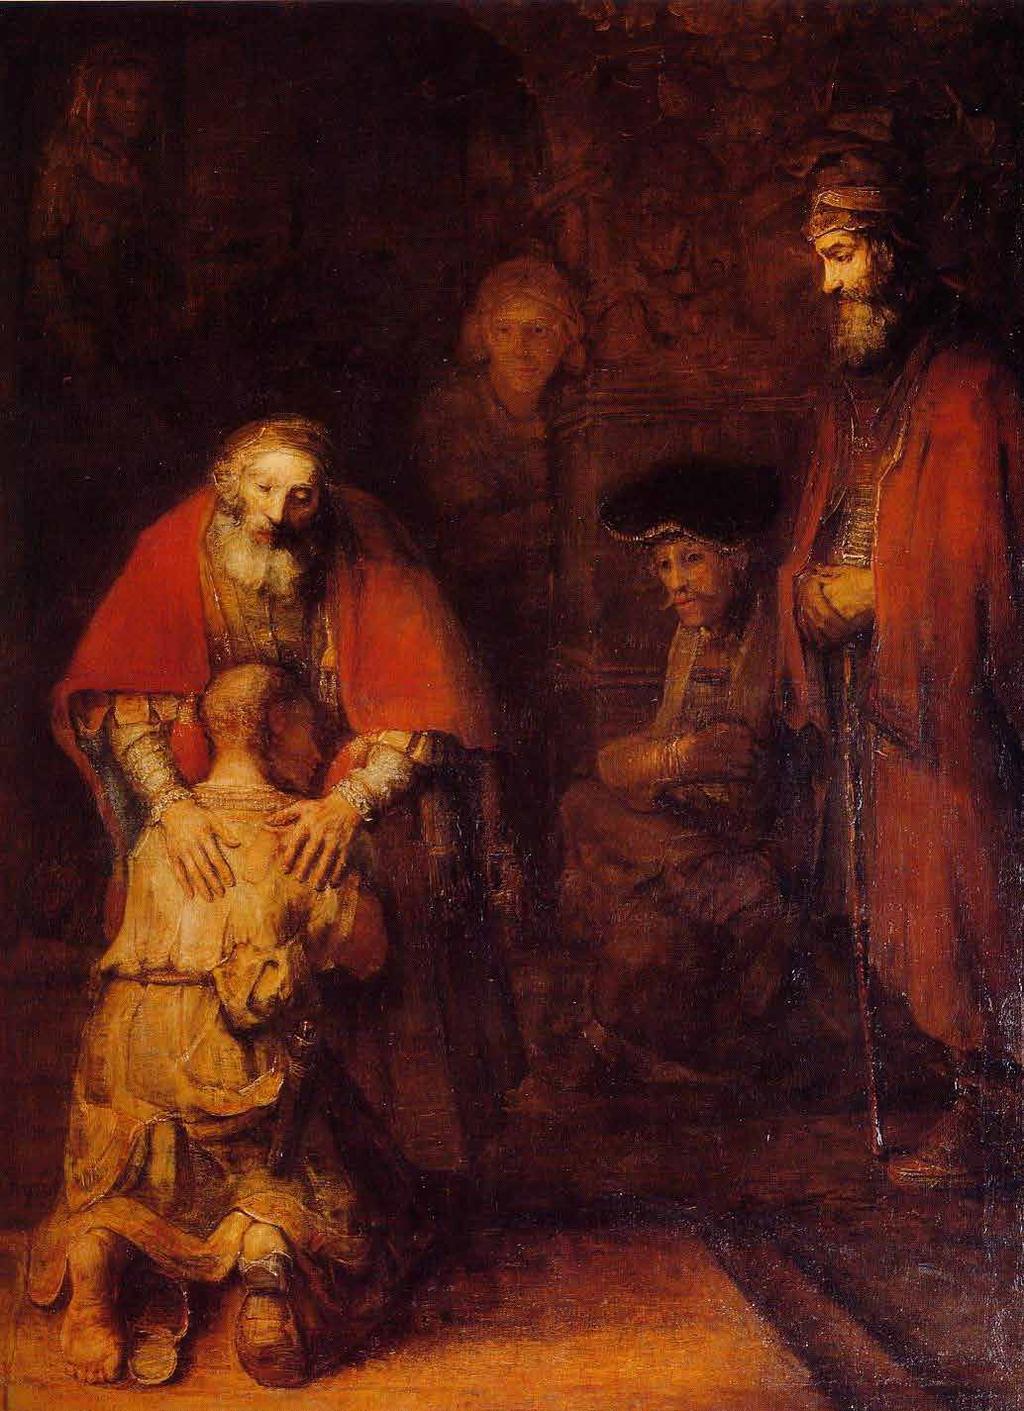 Komentatorzy obrazu Rembrandta Powrót syna marnotrawnego wiele uwagi poświęcają ojcu i